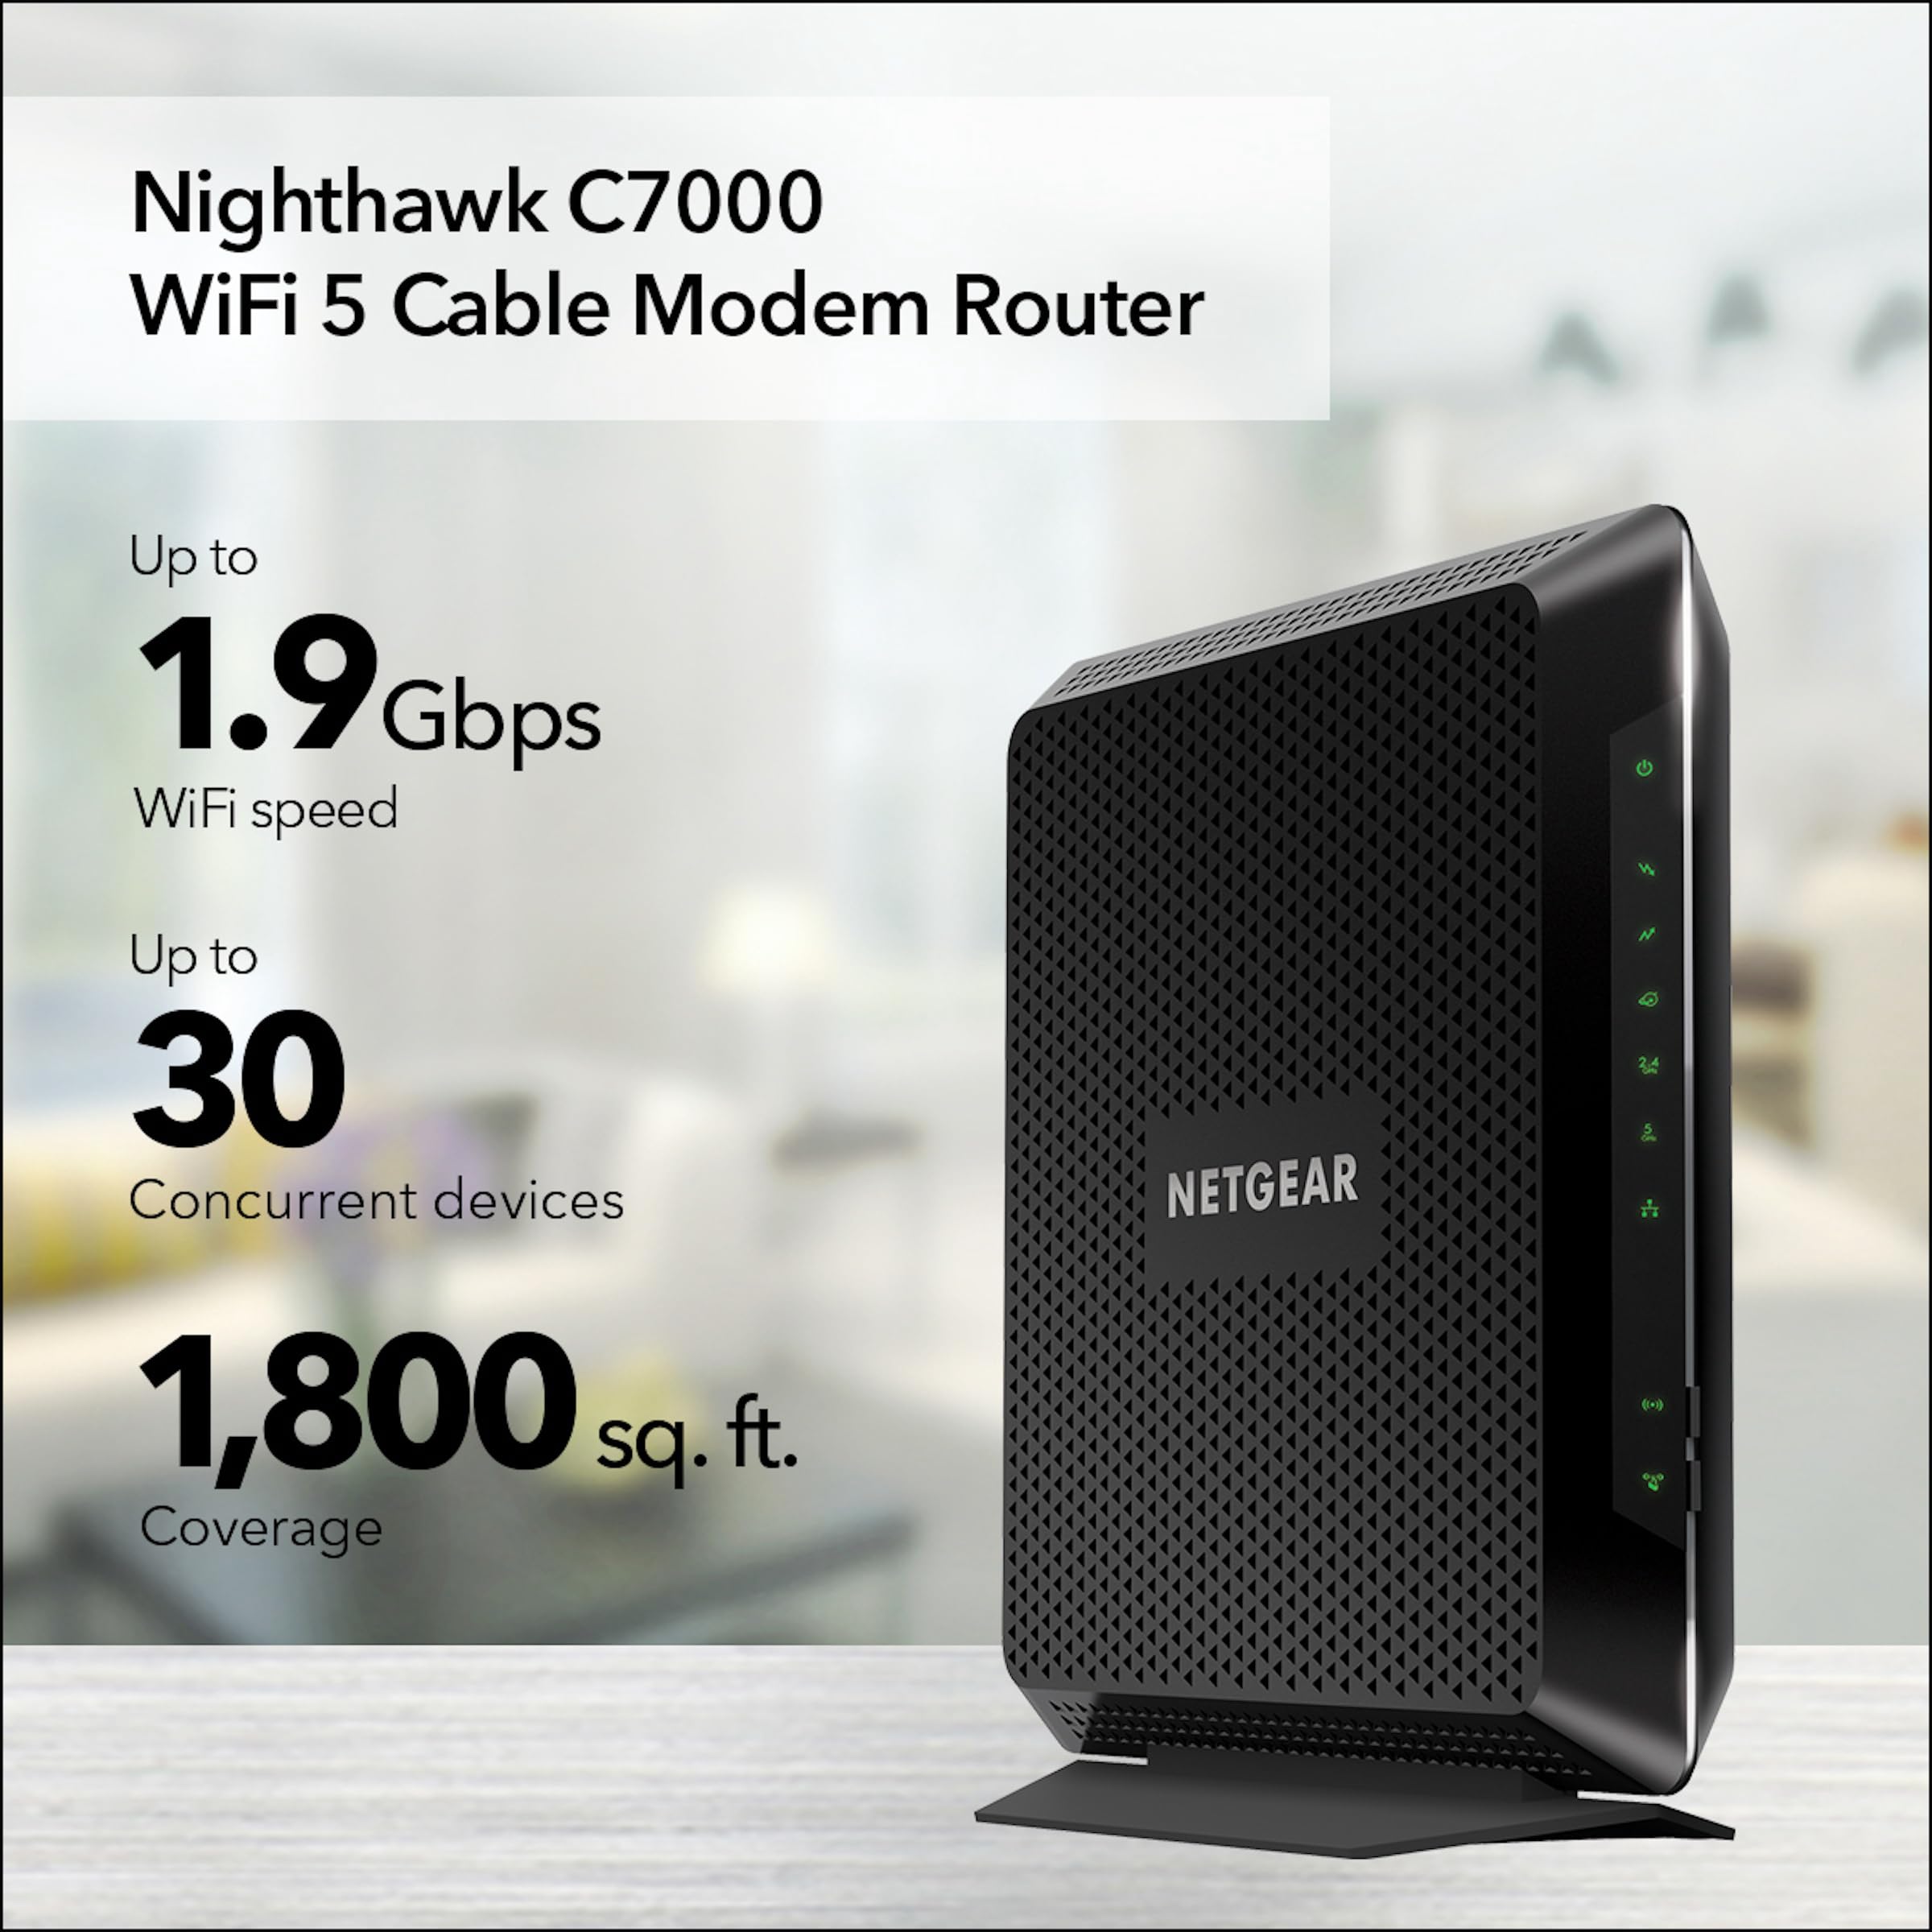 NETGEAR Nighthawk Wi-Fi Router Combo  - Like New